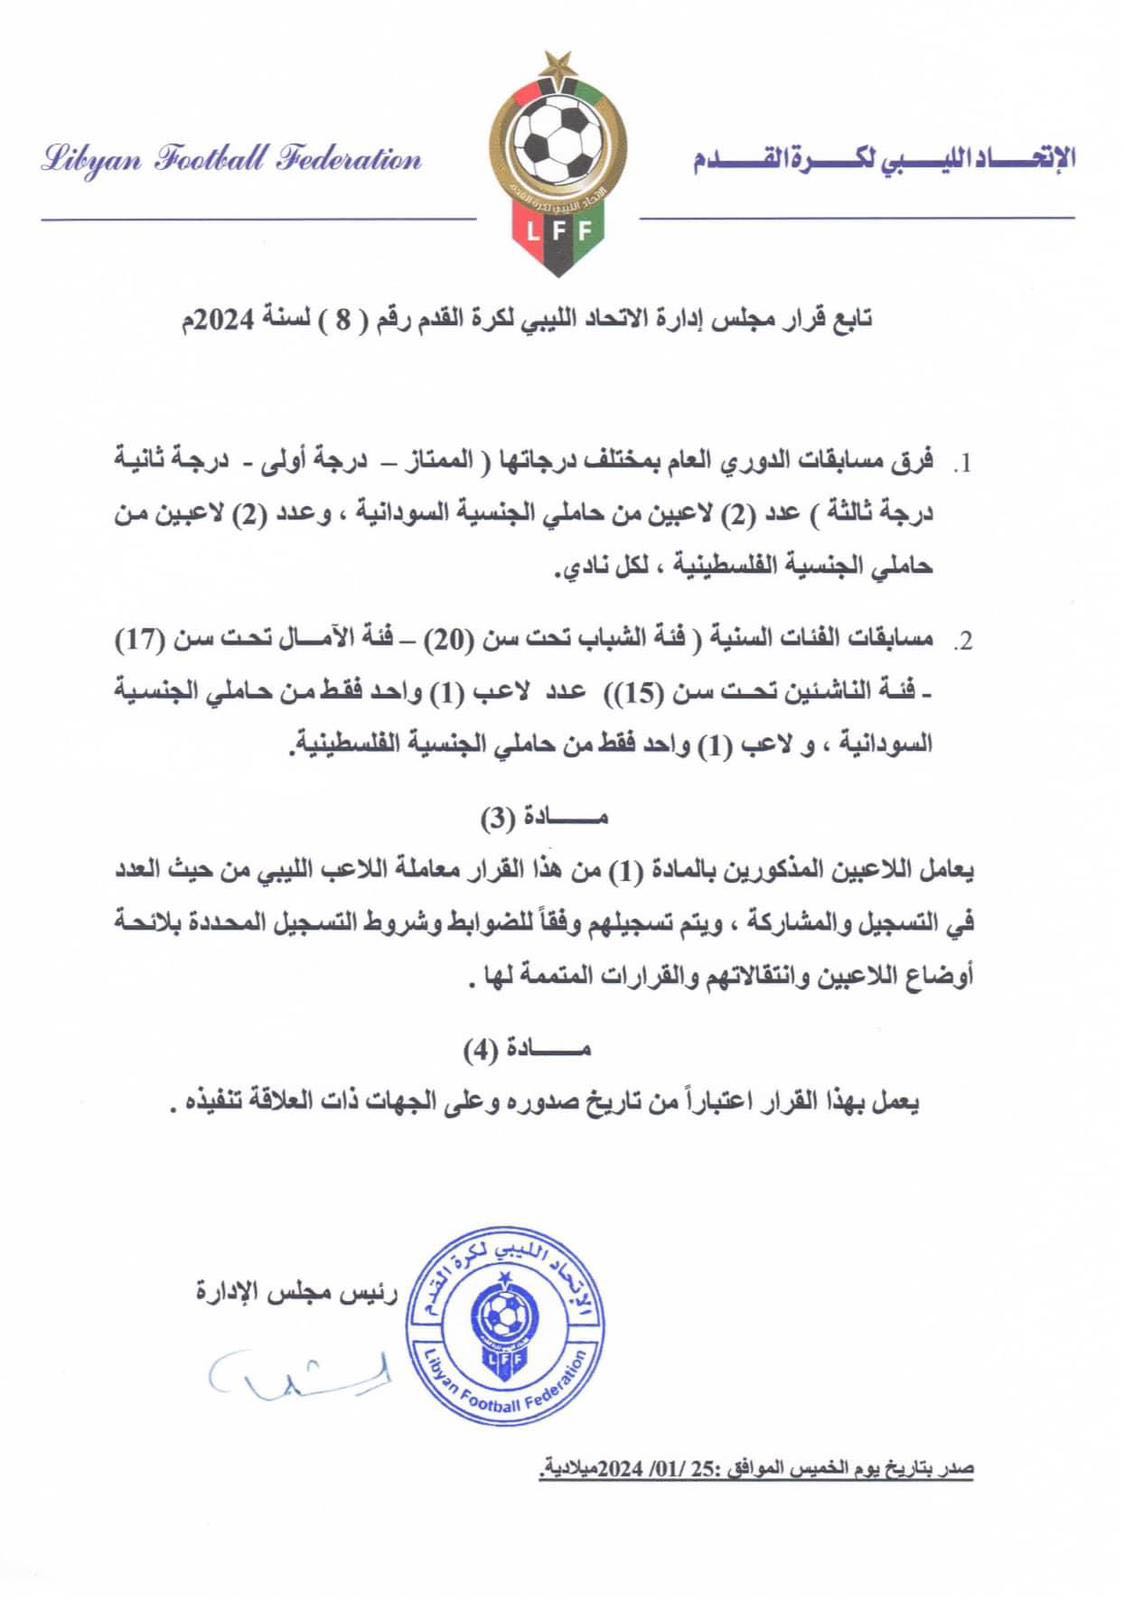 باقي بيان الاتحاد الليبي